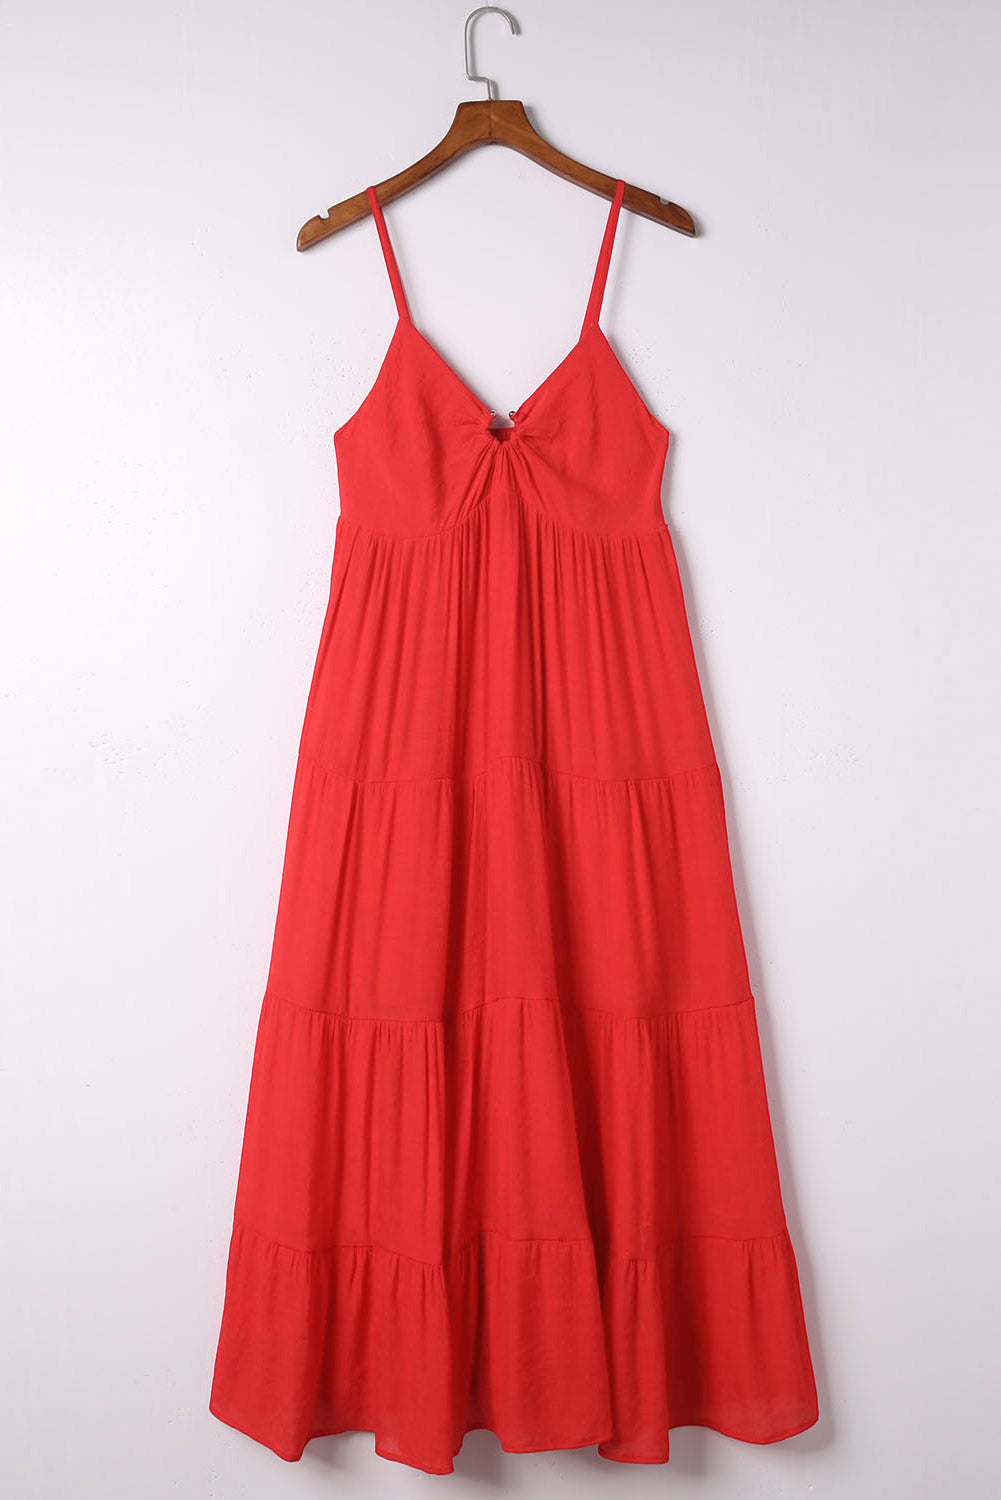 Vatrenocrvena haljina s O-prstenom sa smokiranim naramenicama na više razina